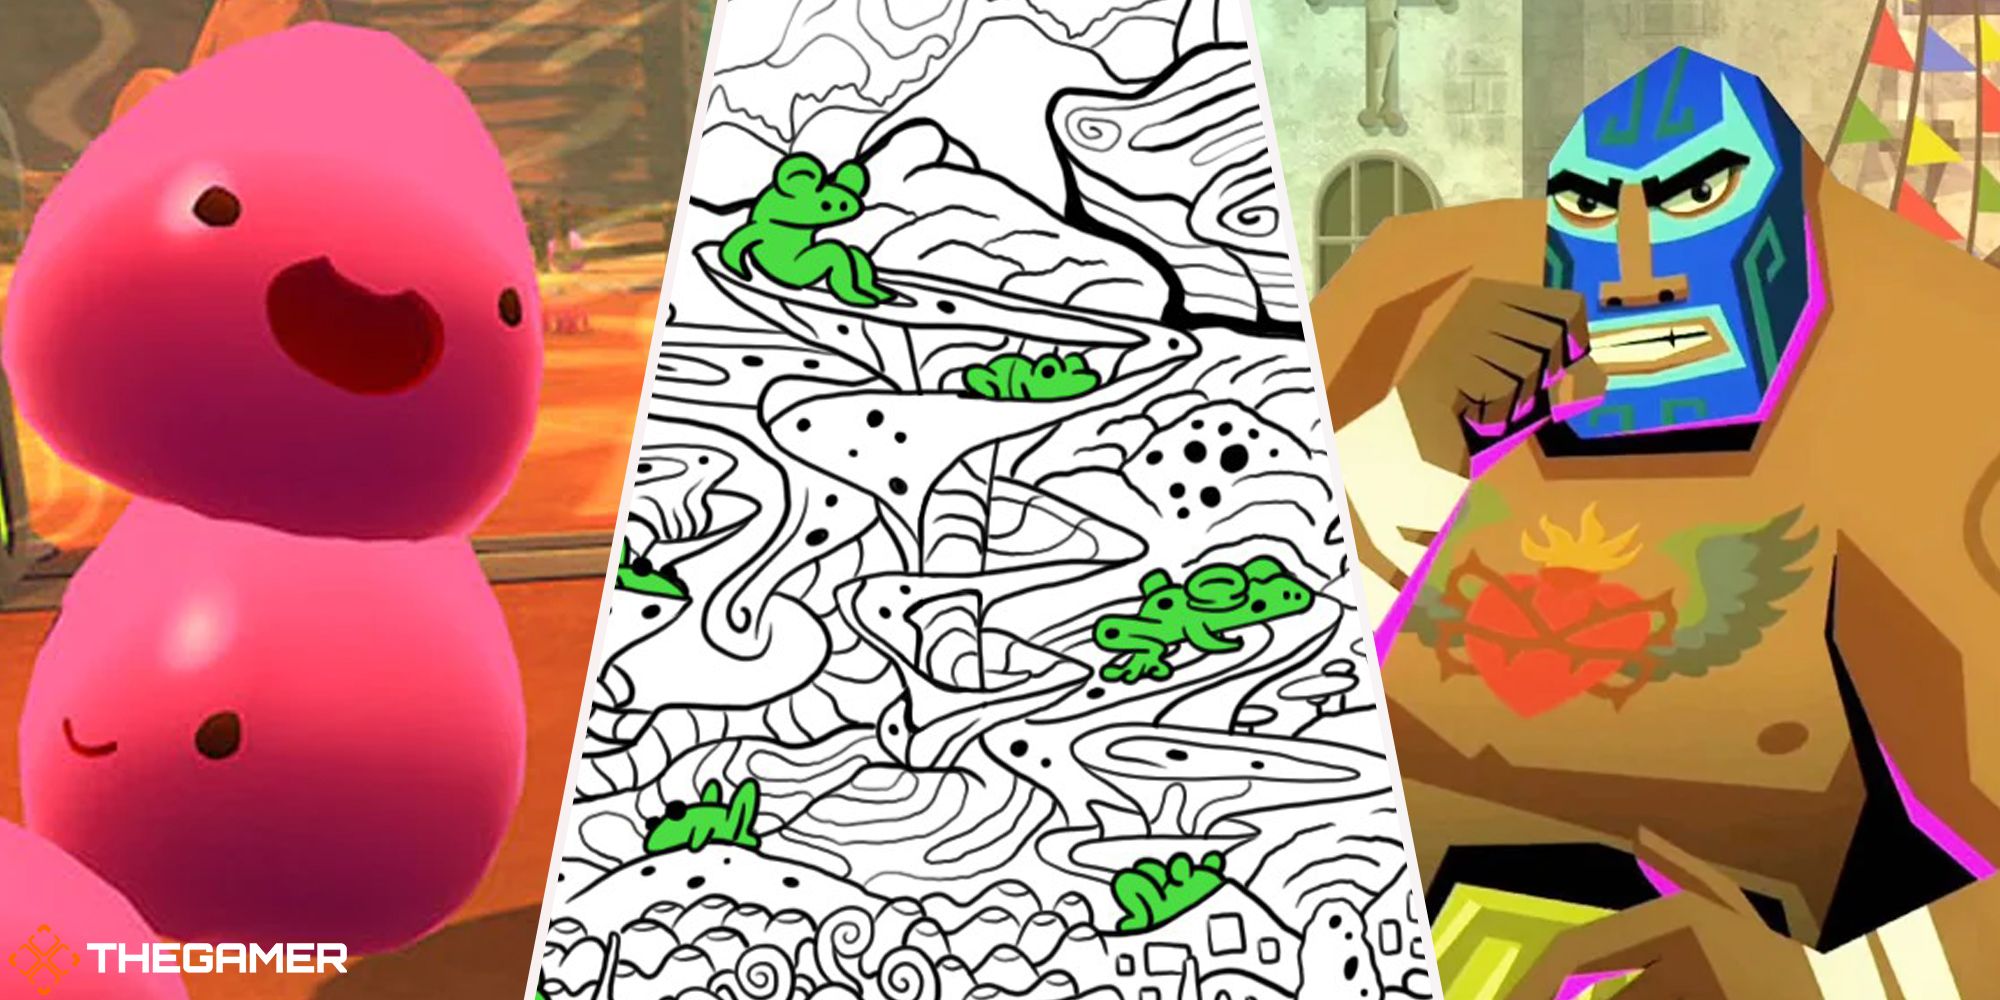 Split image of kids' indie games - Slime Rancher, Guacamelee, 100 Hidden Frogs